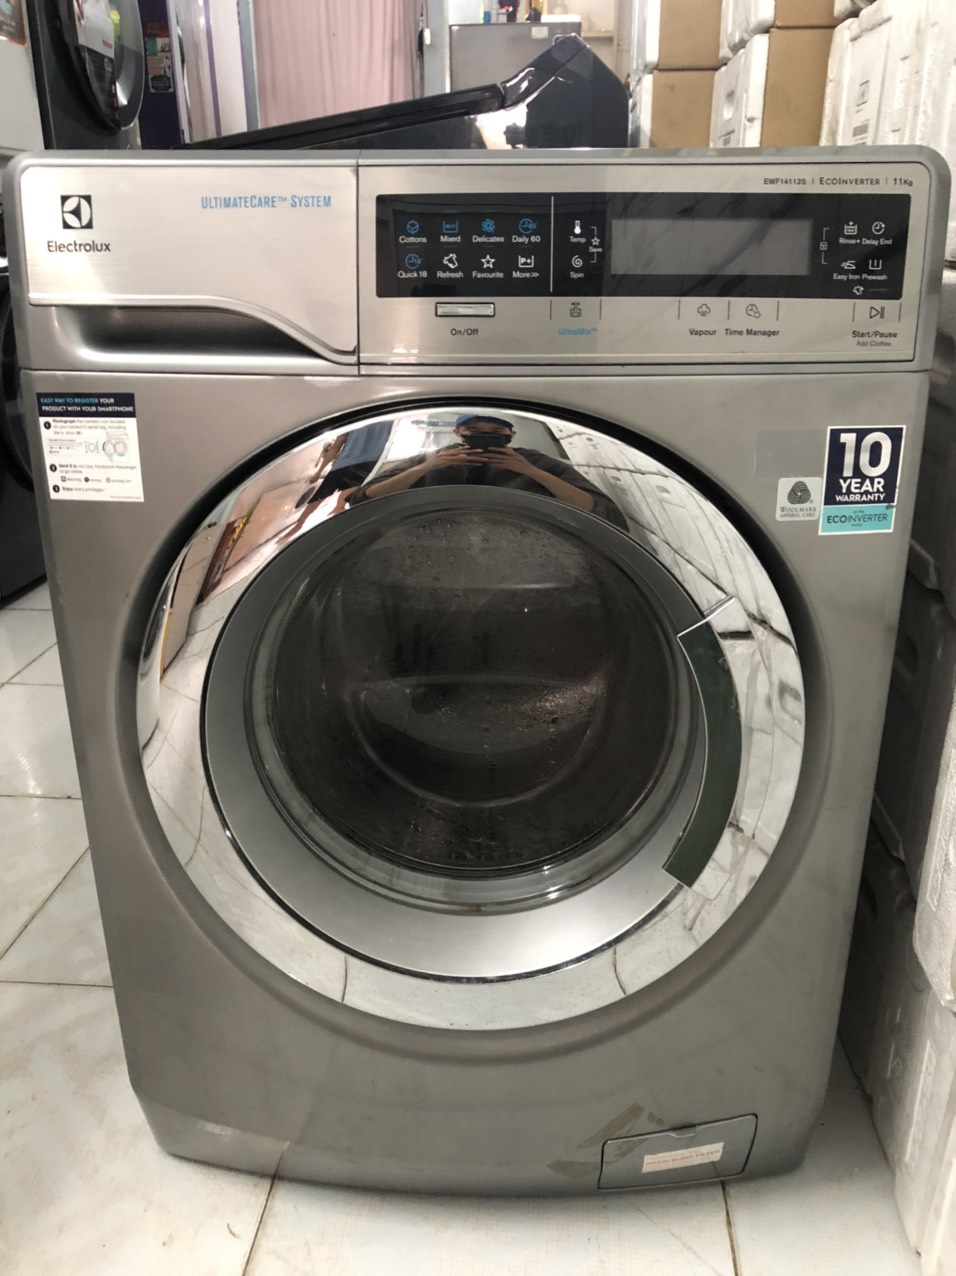 Đến với Thợ Sửa Máy Giặt quận Gò Vấp TPHCM cung cấp dịch vụ tại nhà cho quý khách hàng cách tốt nhất để khắc phục mọi hư hỏng của máy giặt.